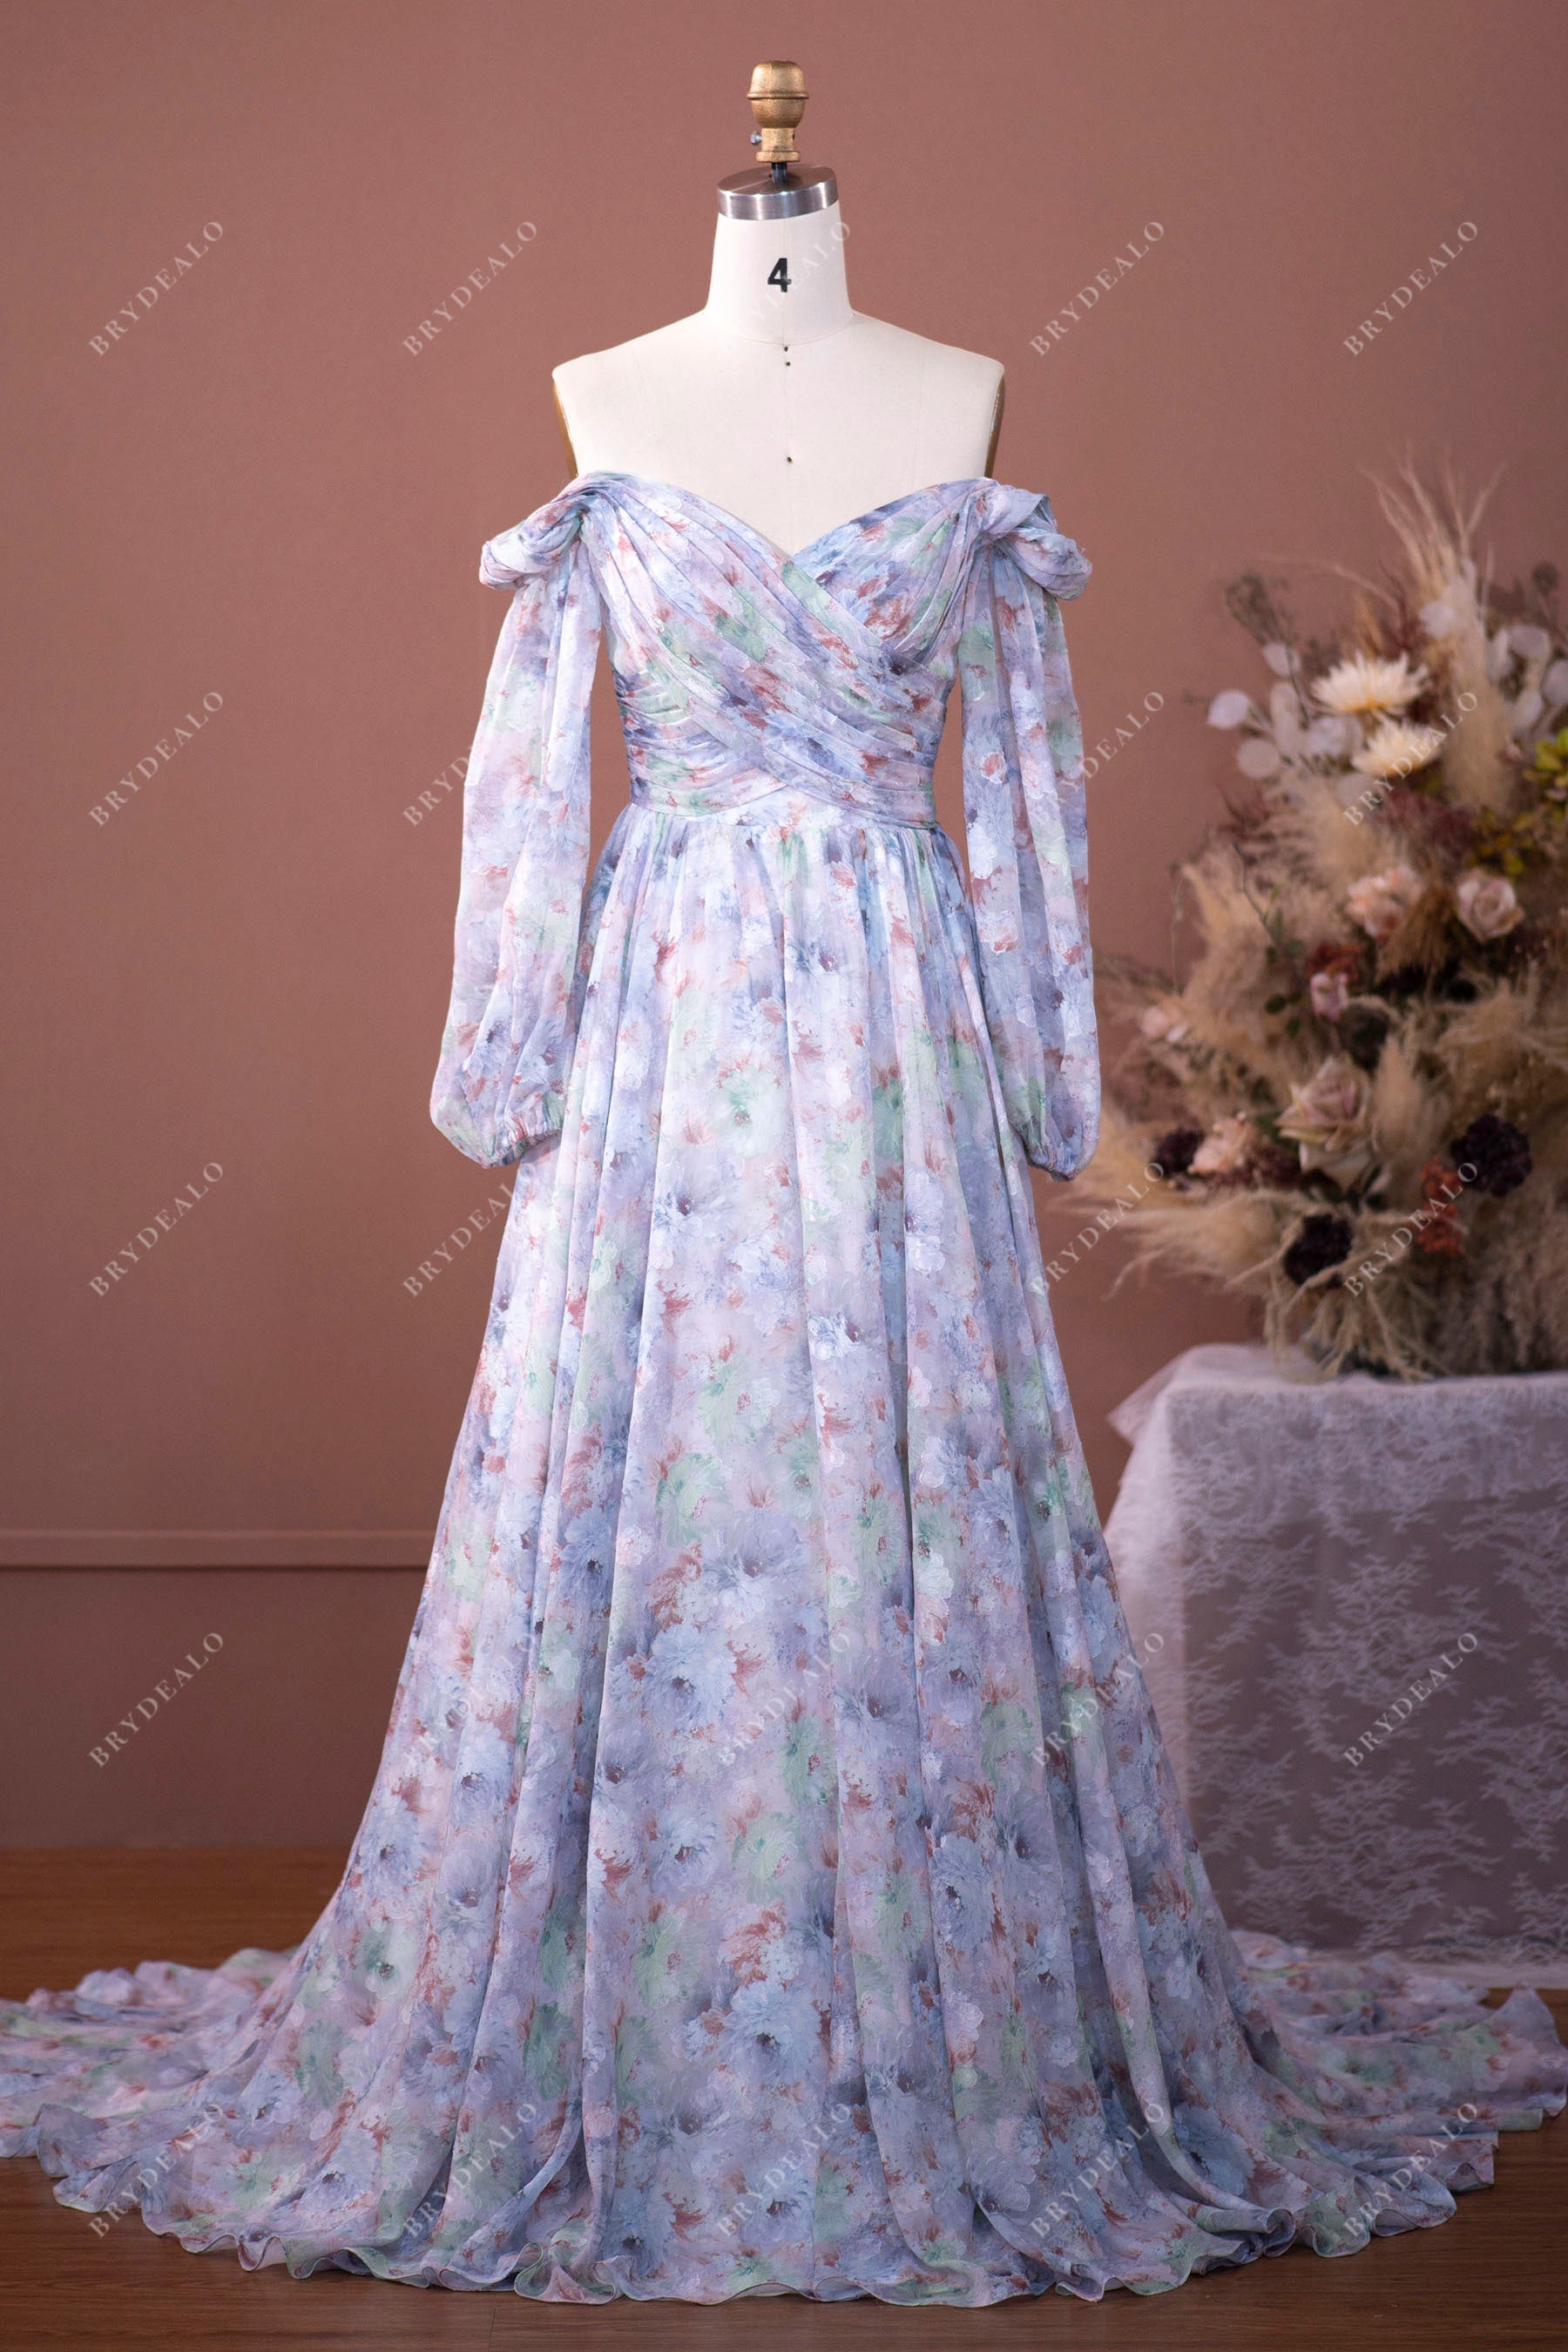 Designer Floral Chiffon Off Shoulder Sleeved Summer Wedding Dress